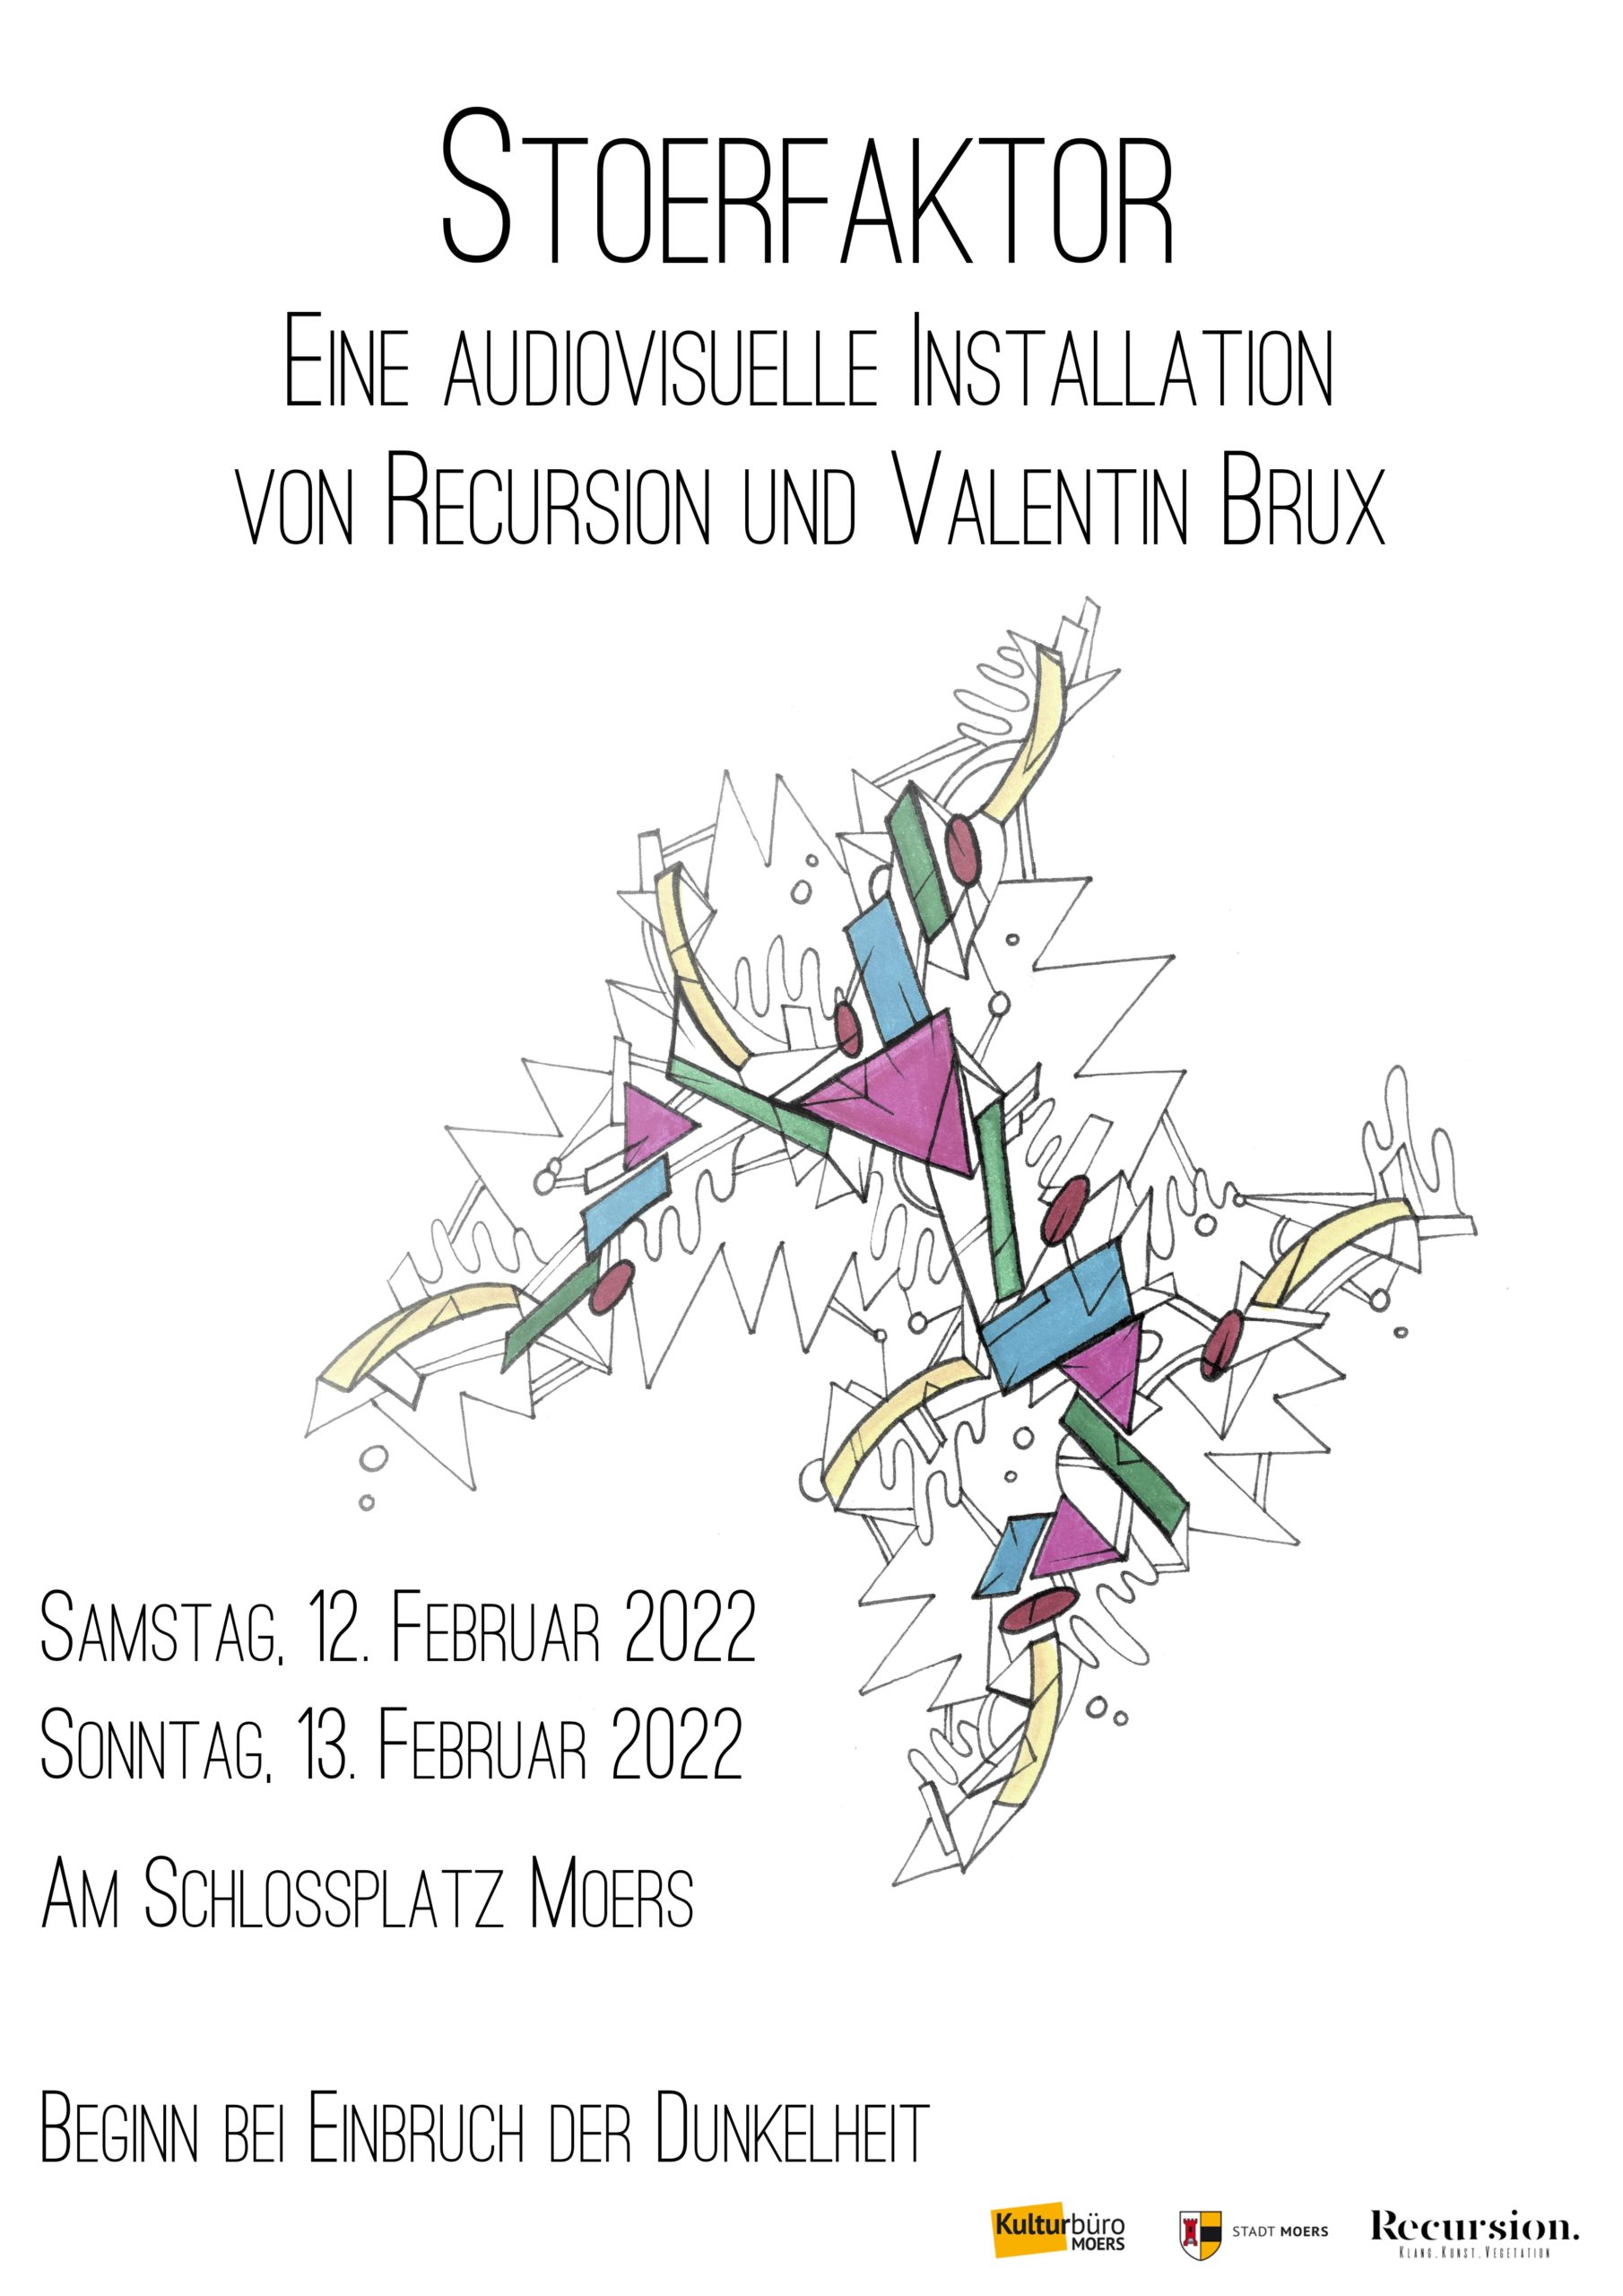 Schlossplatz wird am 12./13. Februar Ort für audiovisuelle Installation 